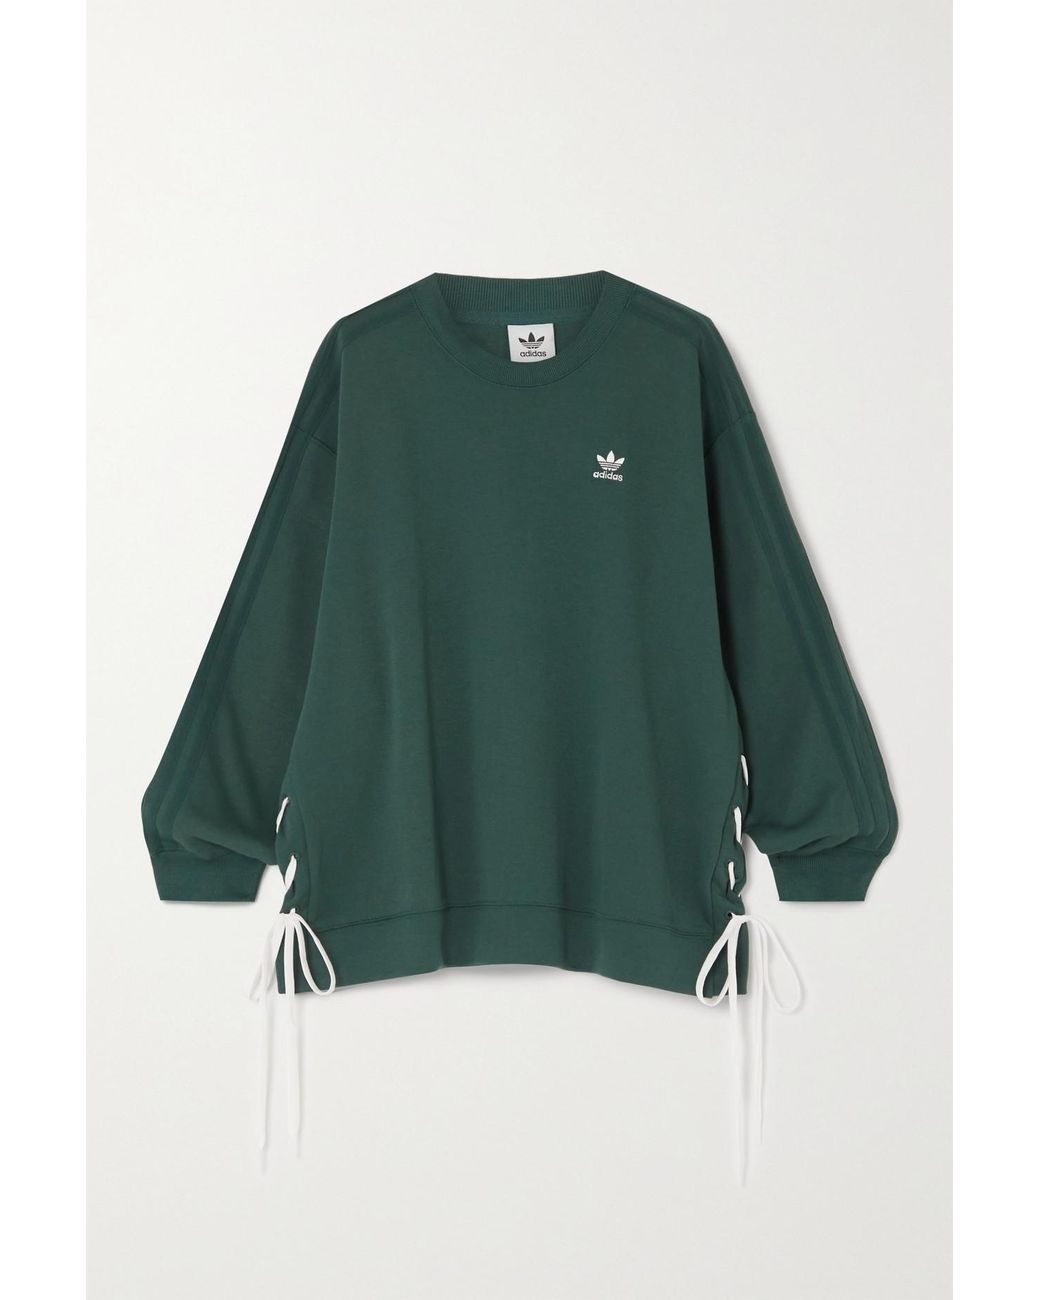 adidas Originals Whipstitched Cotton-jersey Sweatshirt in Green | Lyst